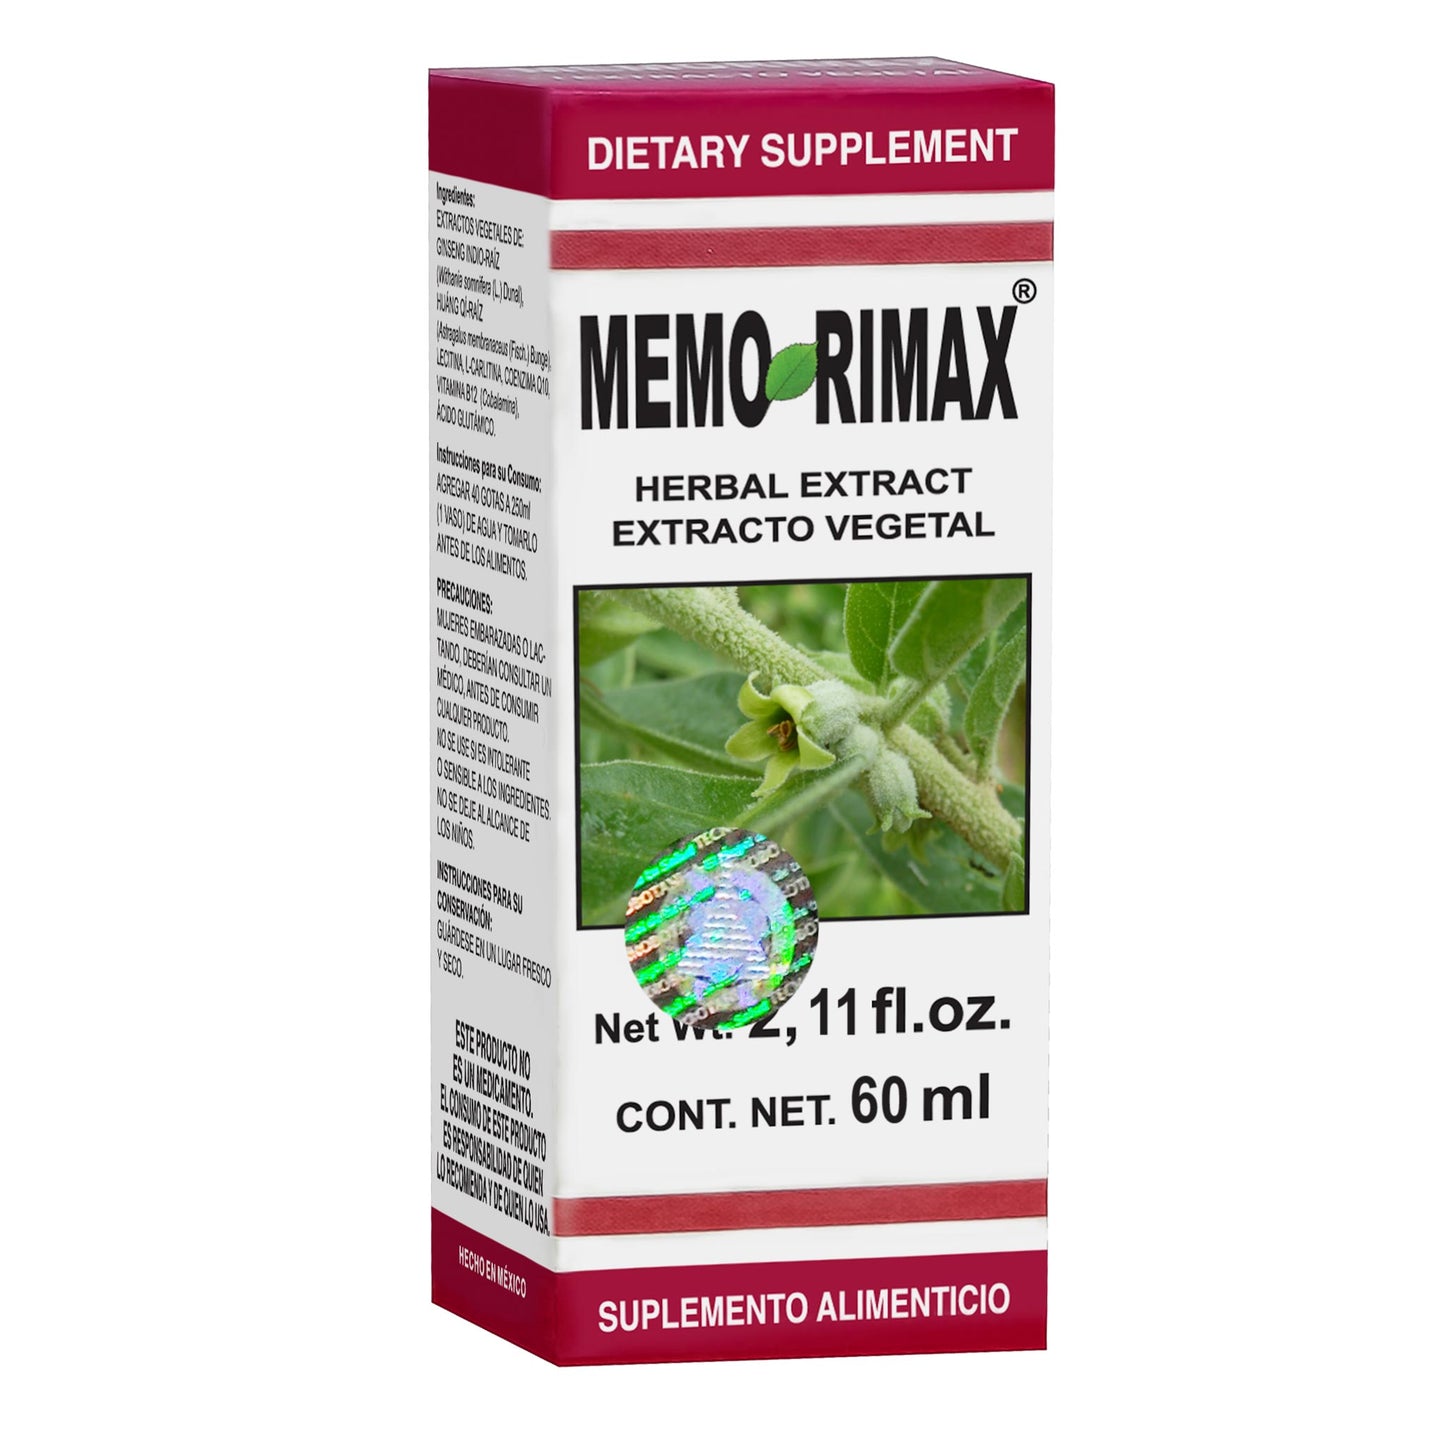 MEMORIMAX ® extracto vegetal 60ml